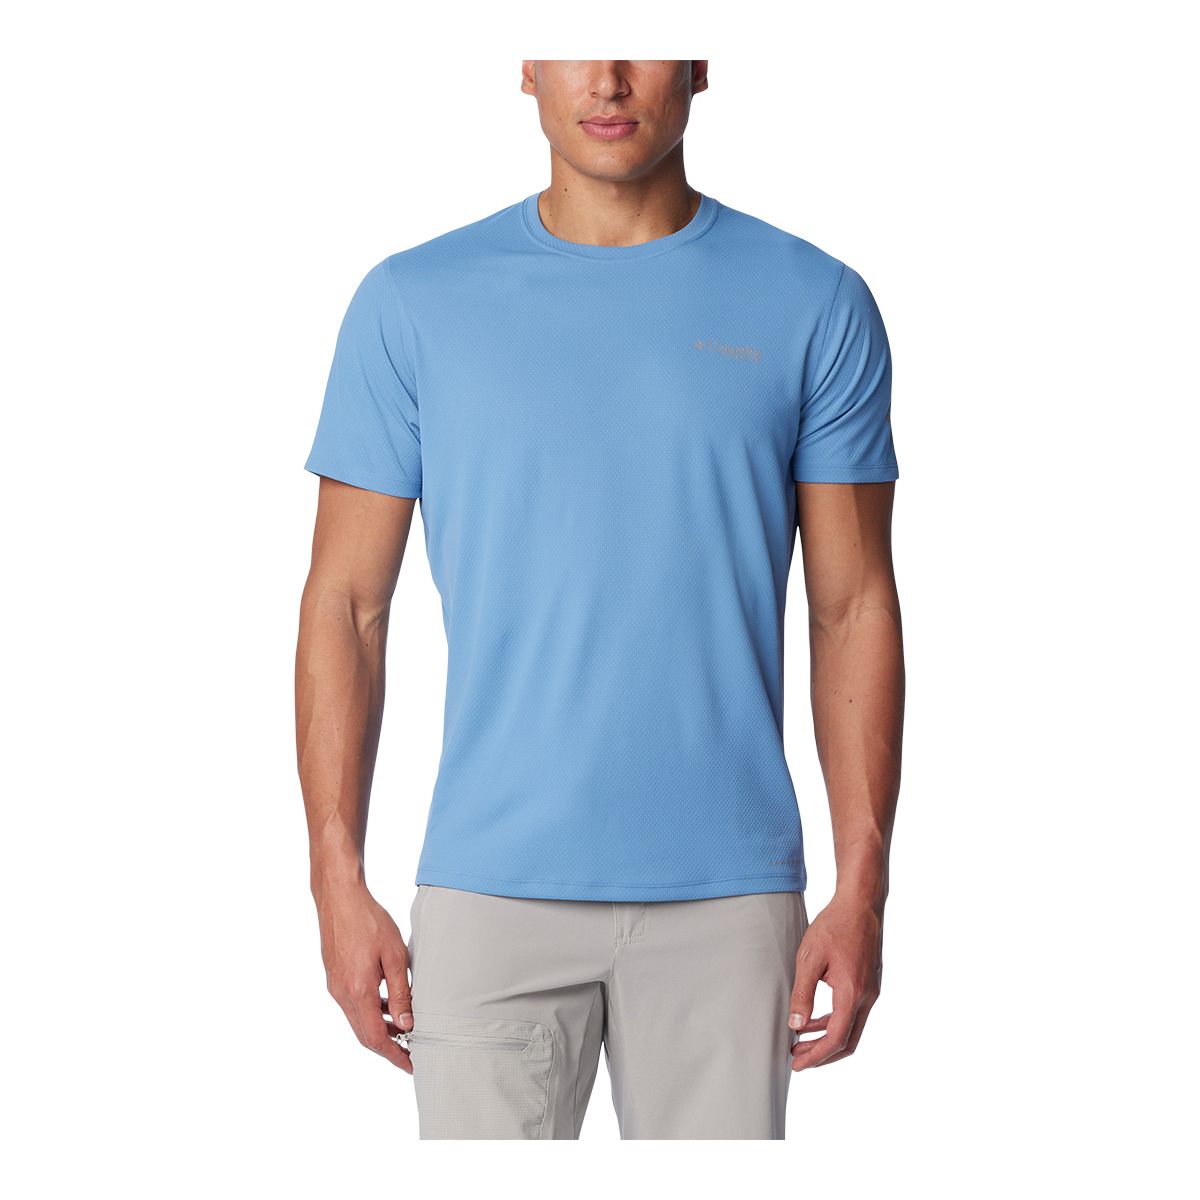 Image of Columbia Men's Titanium Summit Valley T Shirt